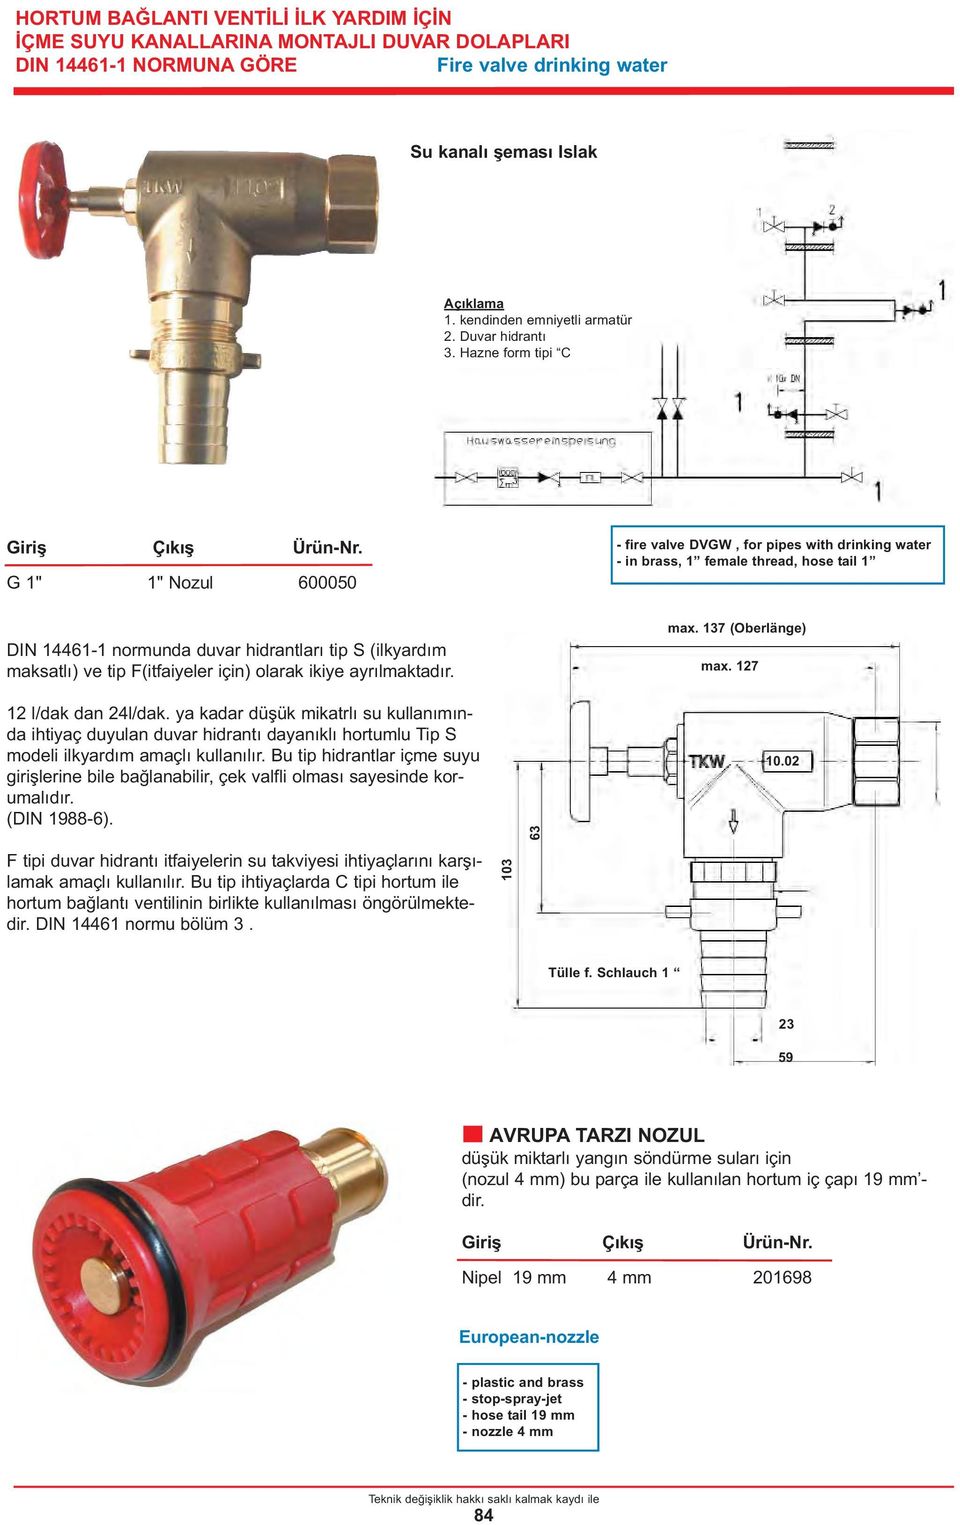 Hazne form tipi C Giriş Çıkış G 1" 1" Nozul 600050 - fire valve DVGW, for pipes with drinking water - in brass, 1 female thread, hose tail 1 DIN 14461-1 normunda duvar hidrantları tip S (ilkyardım